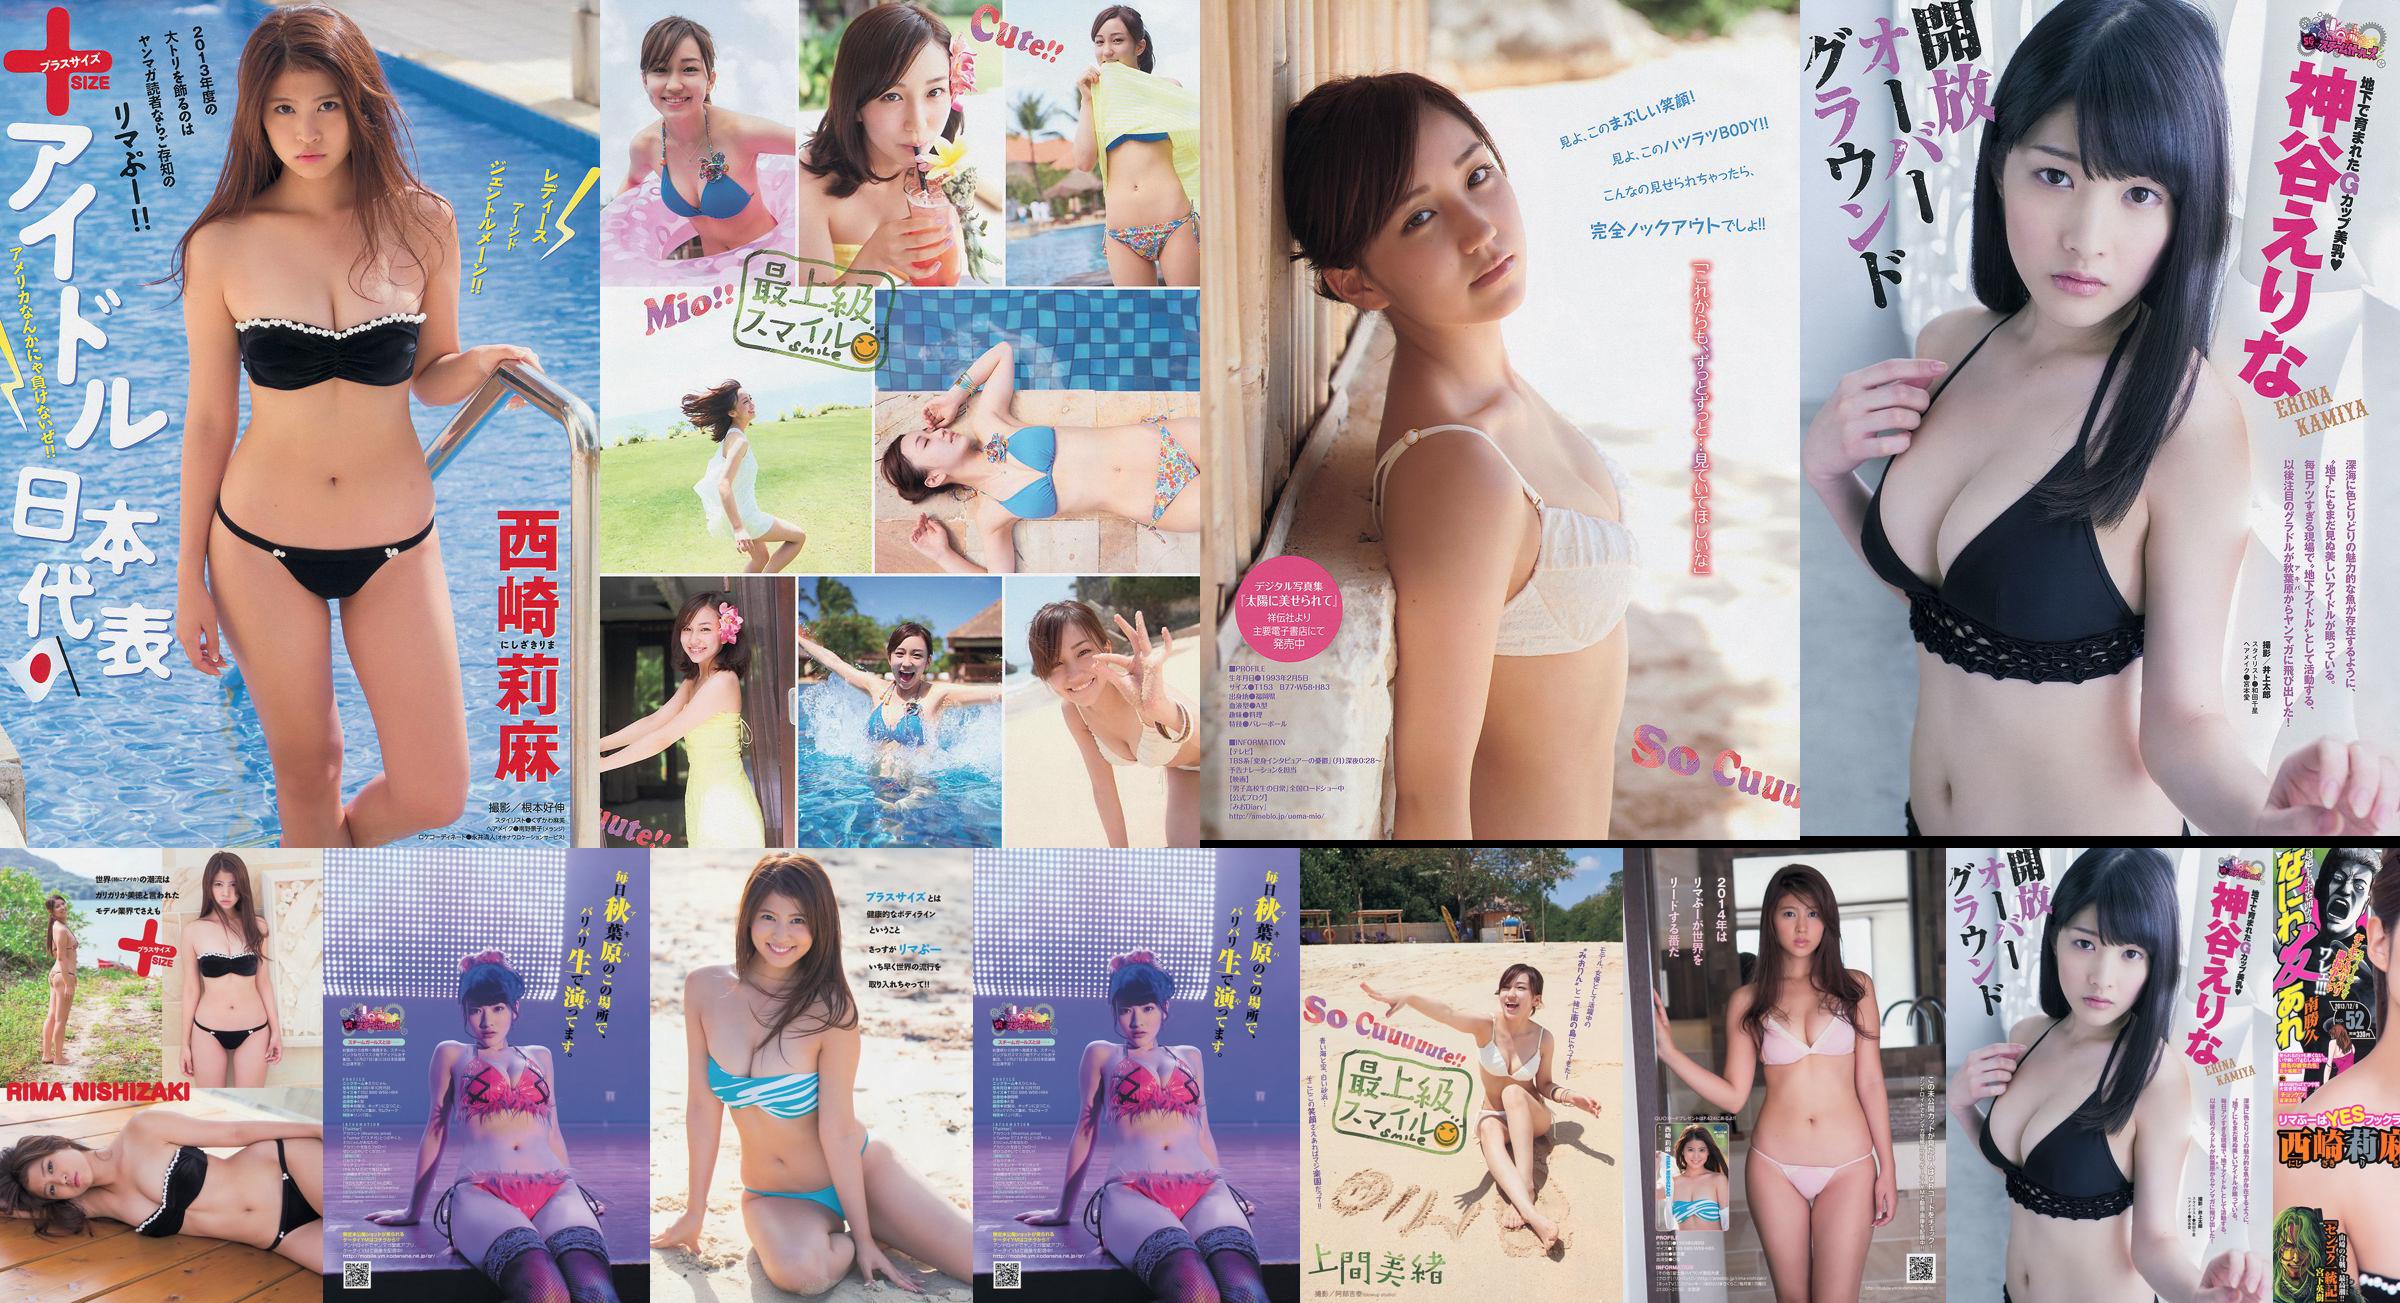 [Tạp chí trẻ] Rima Nishizaki Mio Uema Erina Kamiya 2013 Ảnh số 52 Moshi No.7982e5 Trang 6